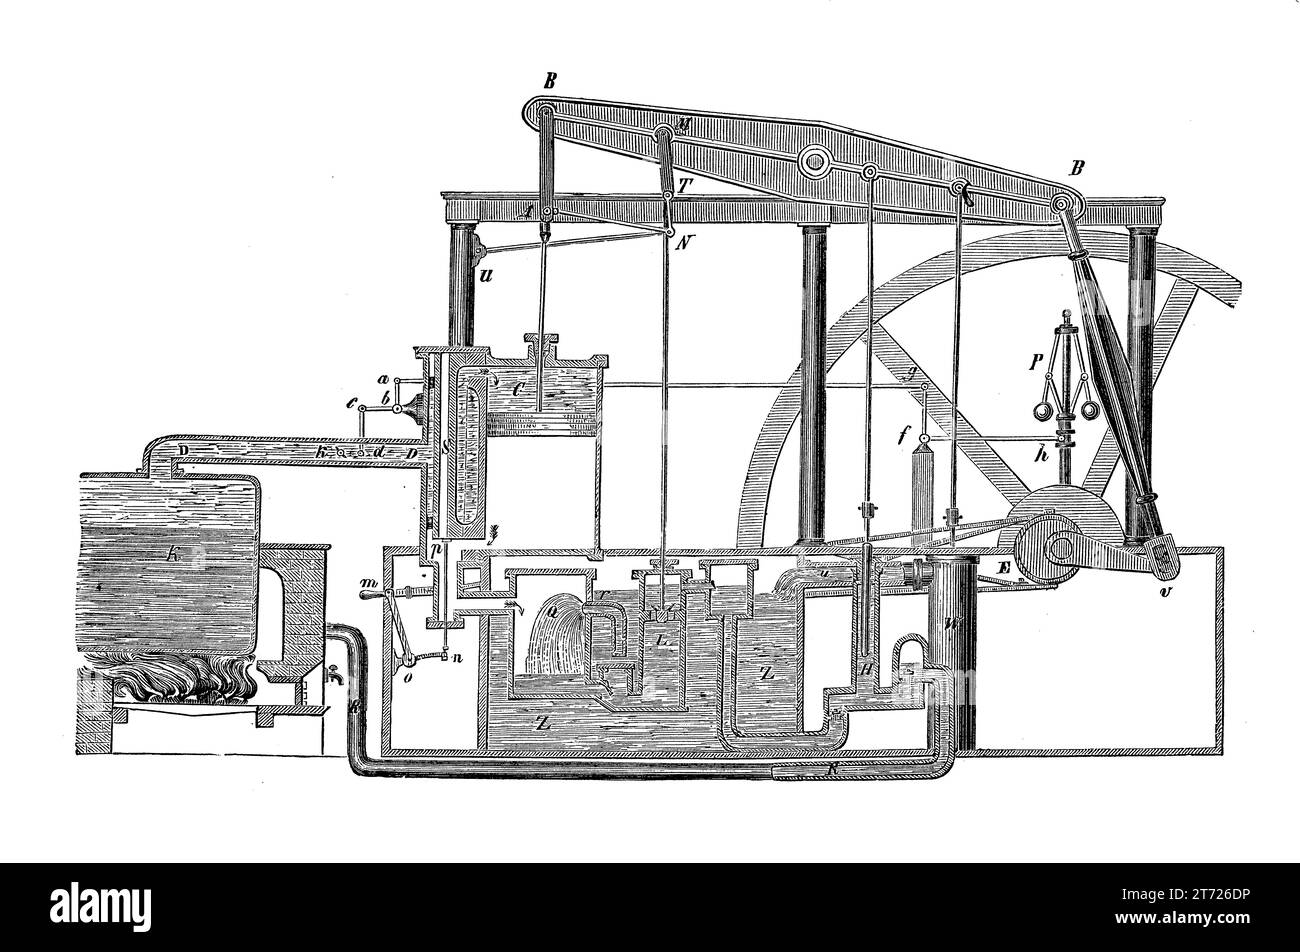 Schema del motore a vapore a doppia azione Watt prodotto nel 1776 in sostituzione dei precedenti motori a vapore con la dipendenza di un cilindro di condensazione separato raffreddato ad acqua per mantenere la condensa del vapore. Foto Stock